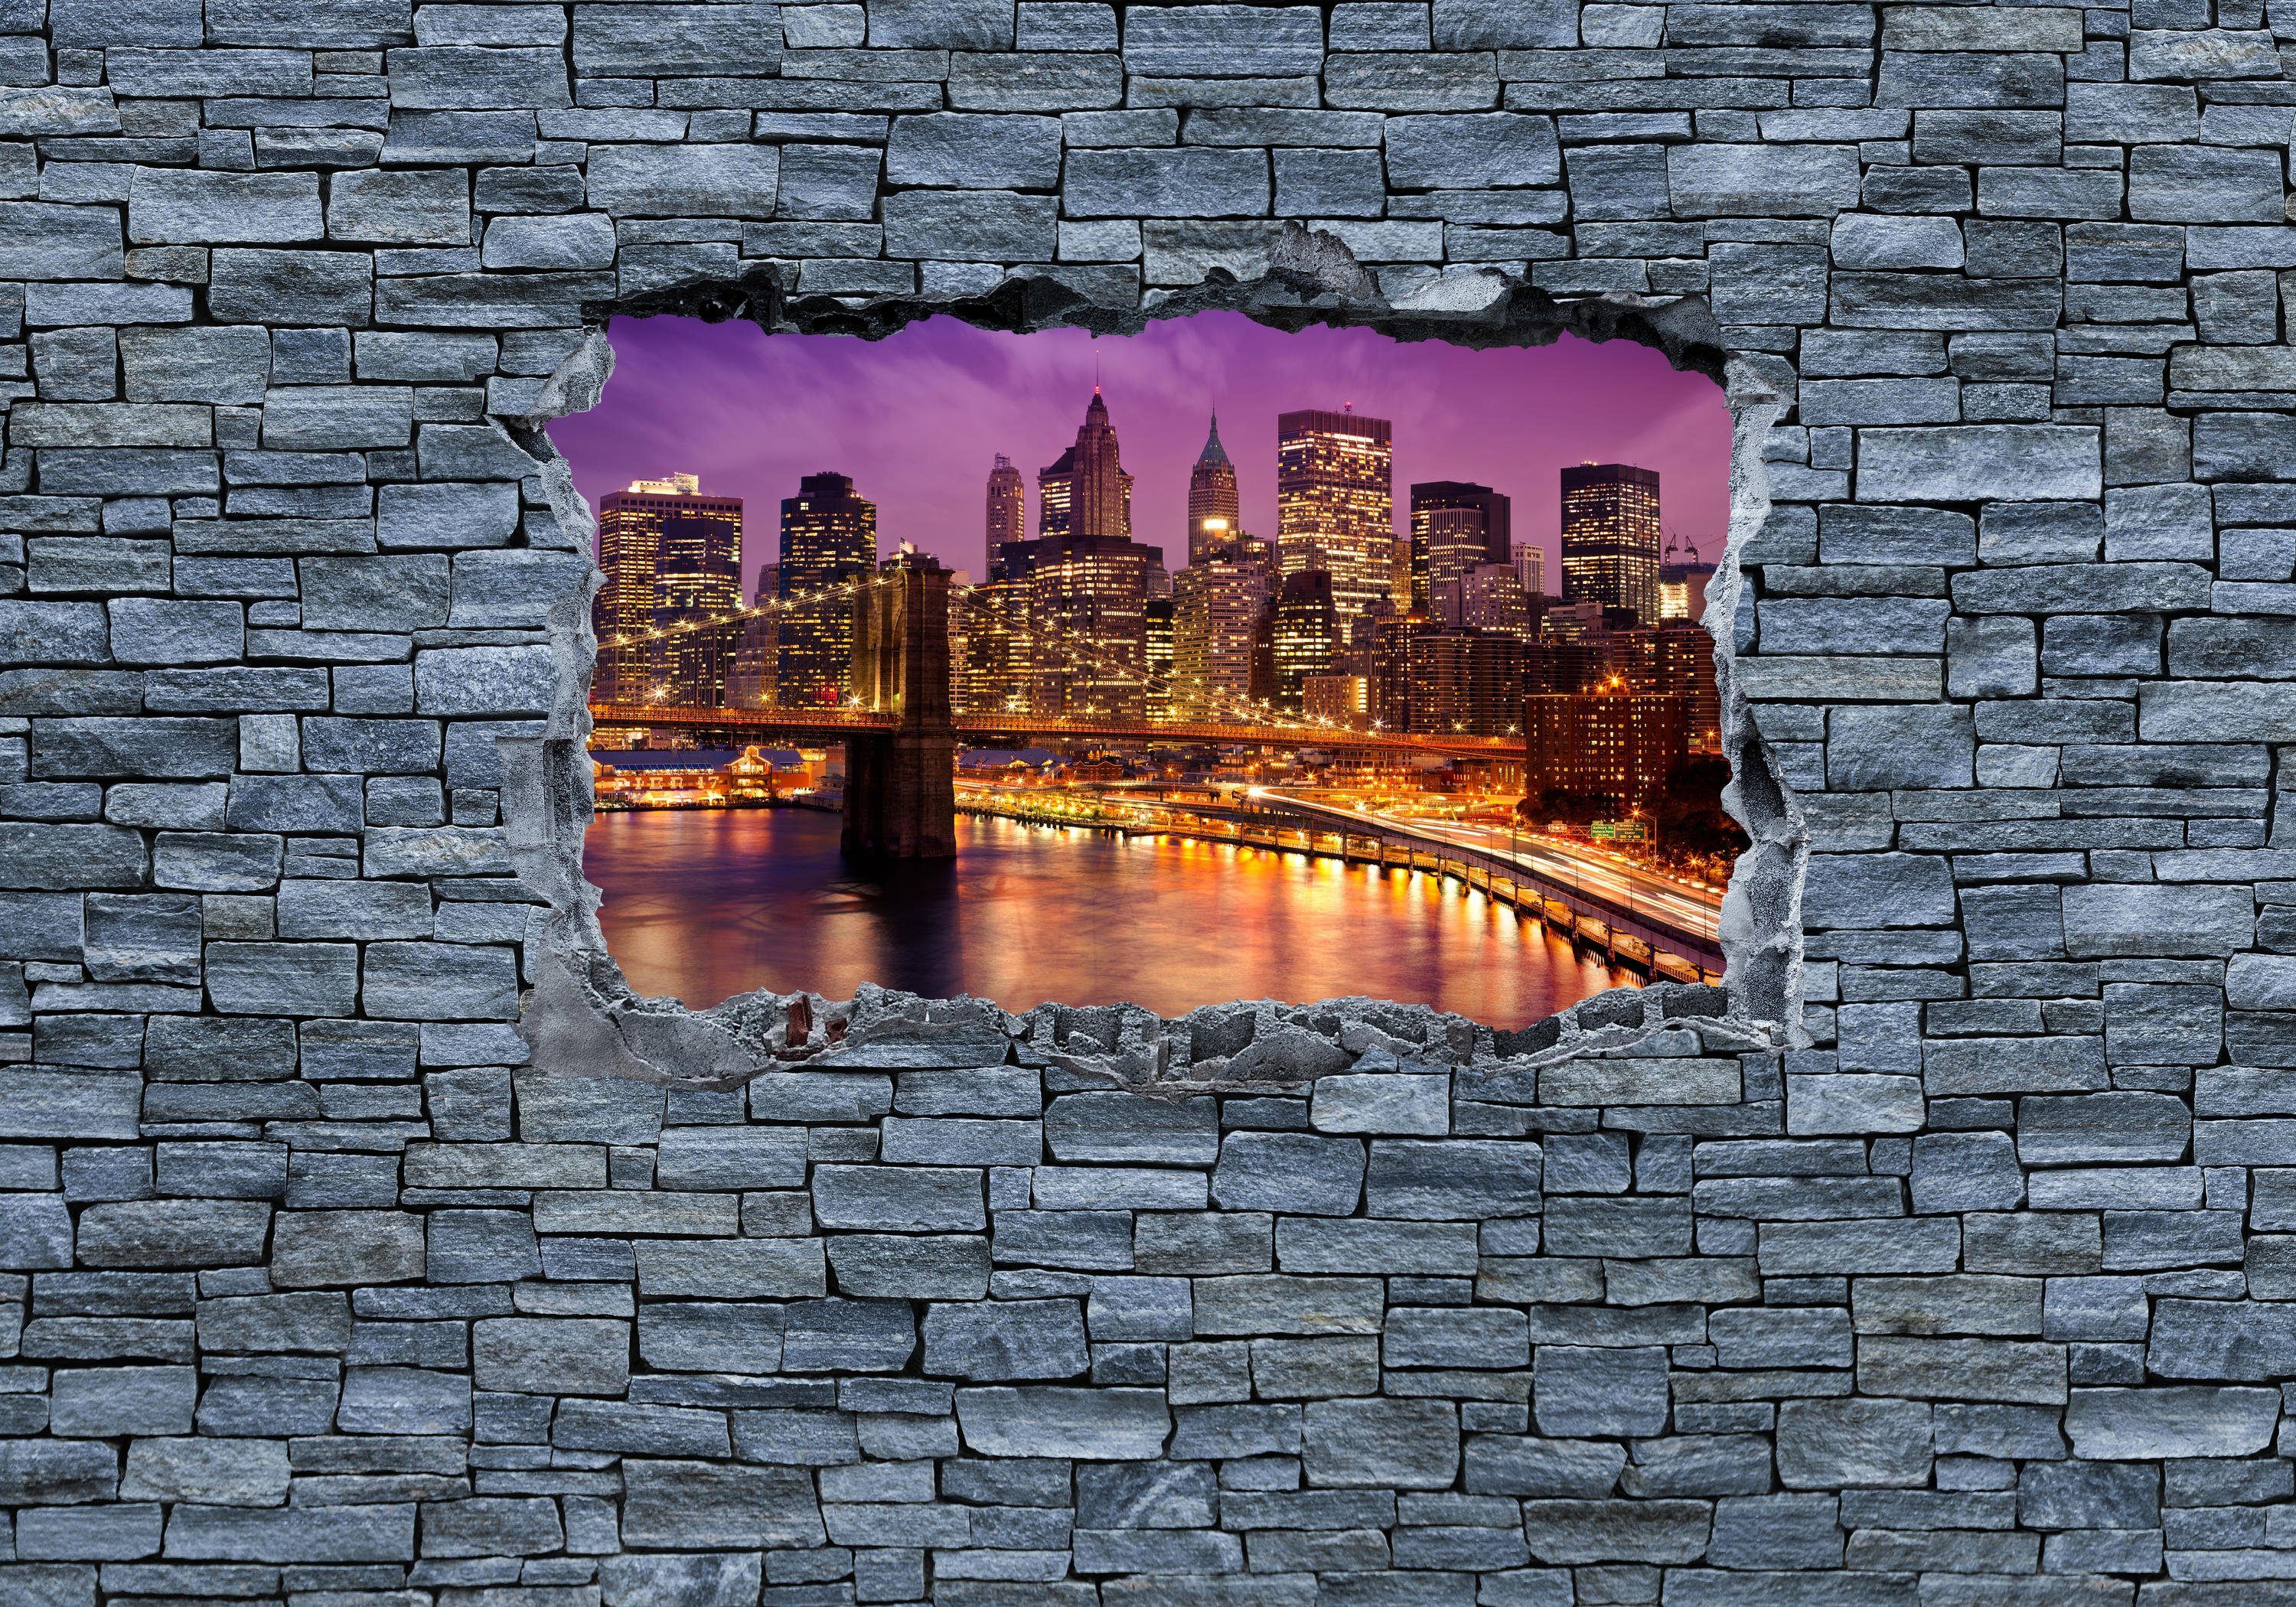 wandmotiv24 Fototapete 3D Optik - New York Manhattan bei Nacht, glatt, Wandtapete, Motivtapete, matt, Vliestapete